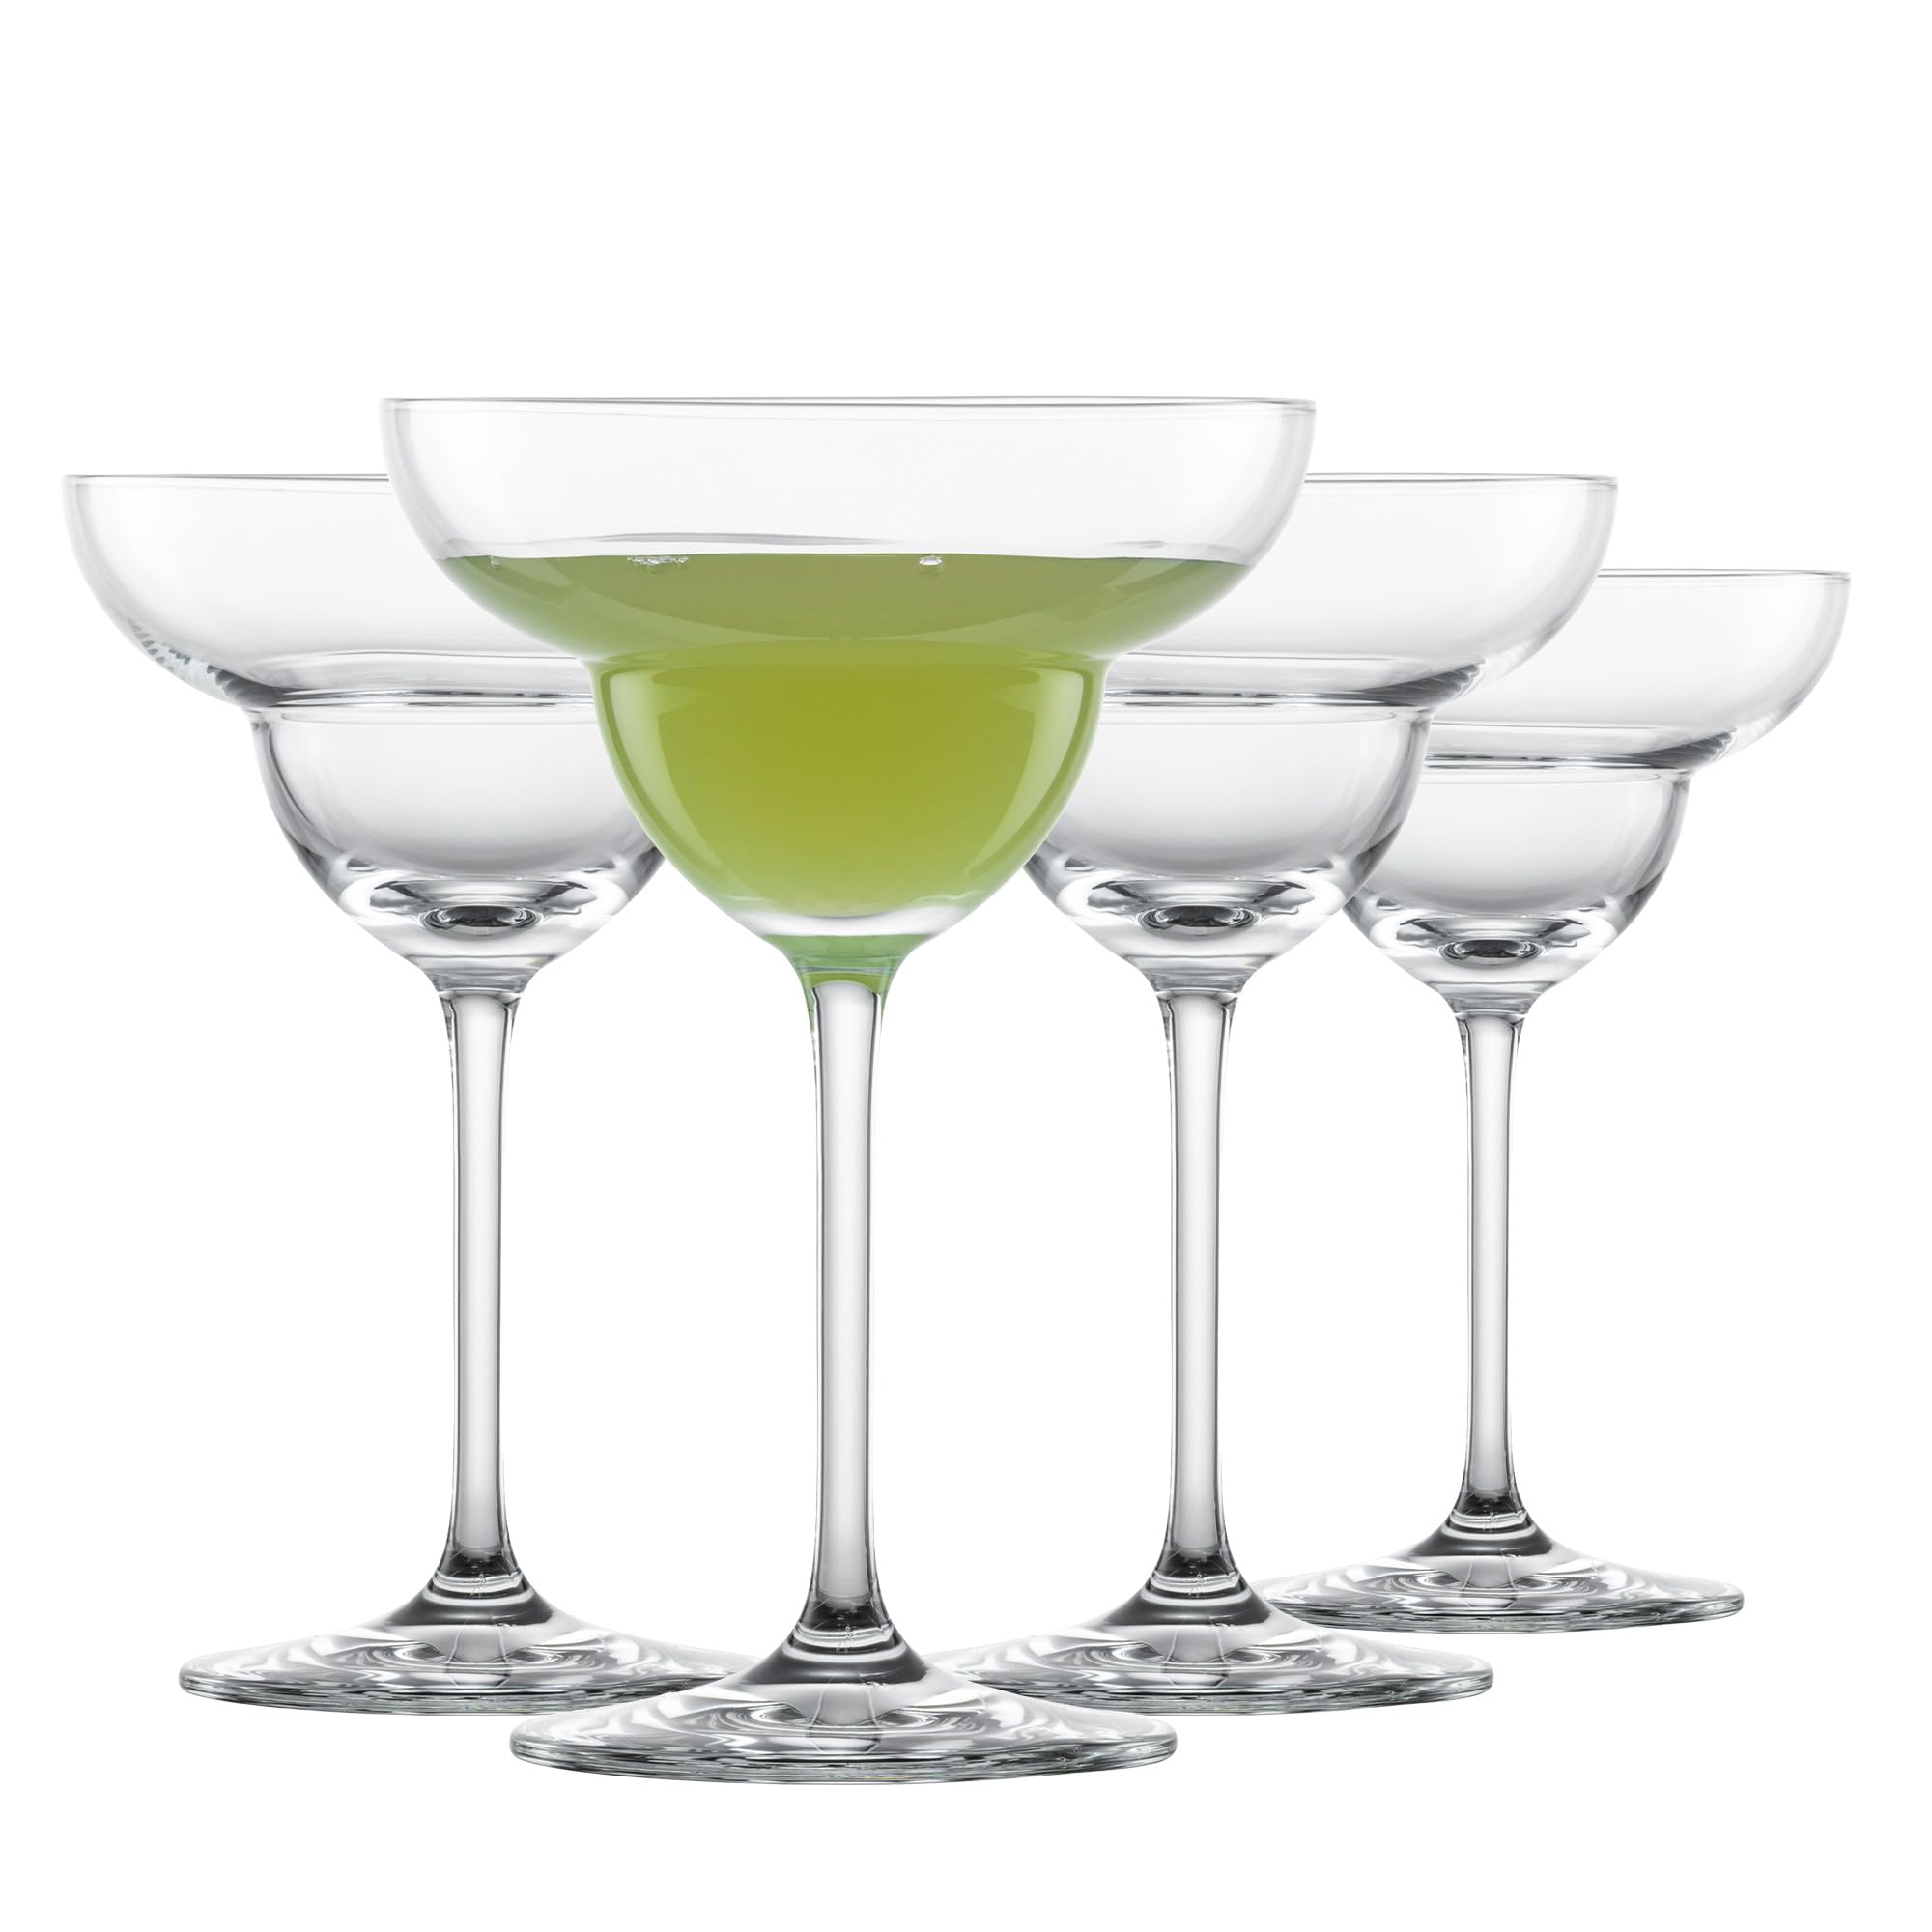 SCHOTT ZWIESEL Margaritaglas Bar Special (4er-Set), ausladende Cocktailgläser für Margaritas, spülmaschinenfeste Tritan-Kristallgläser, Made in Germany (Art.-Nr. 123627)